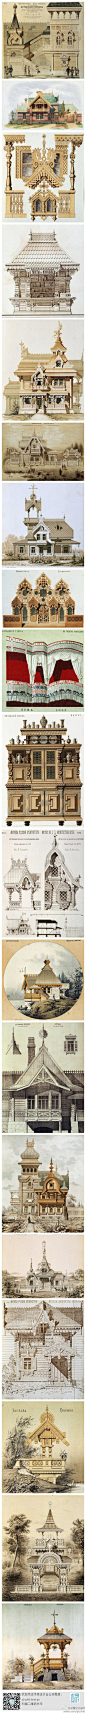 18世纪俄罗斯建筑设计图